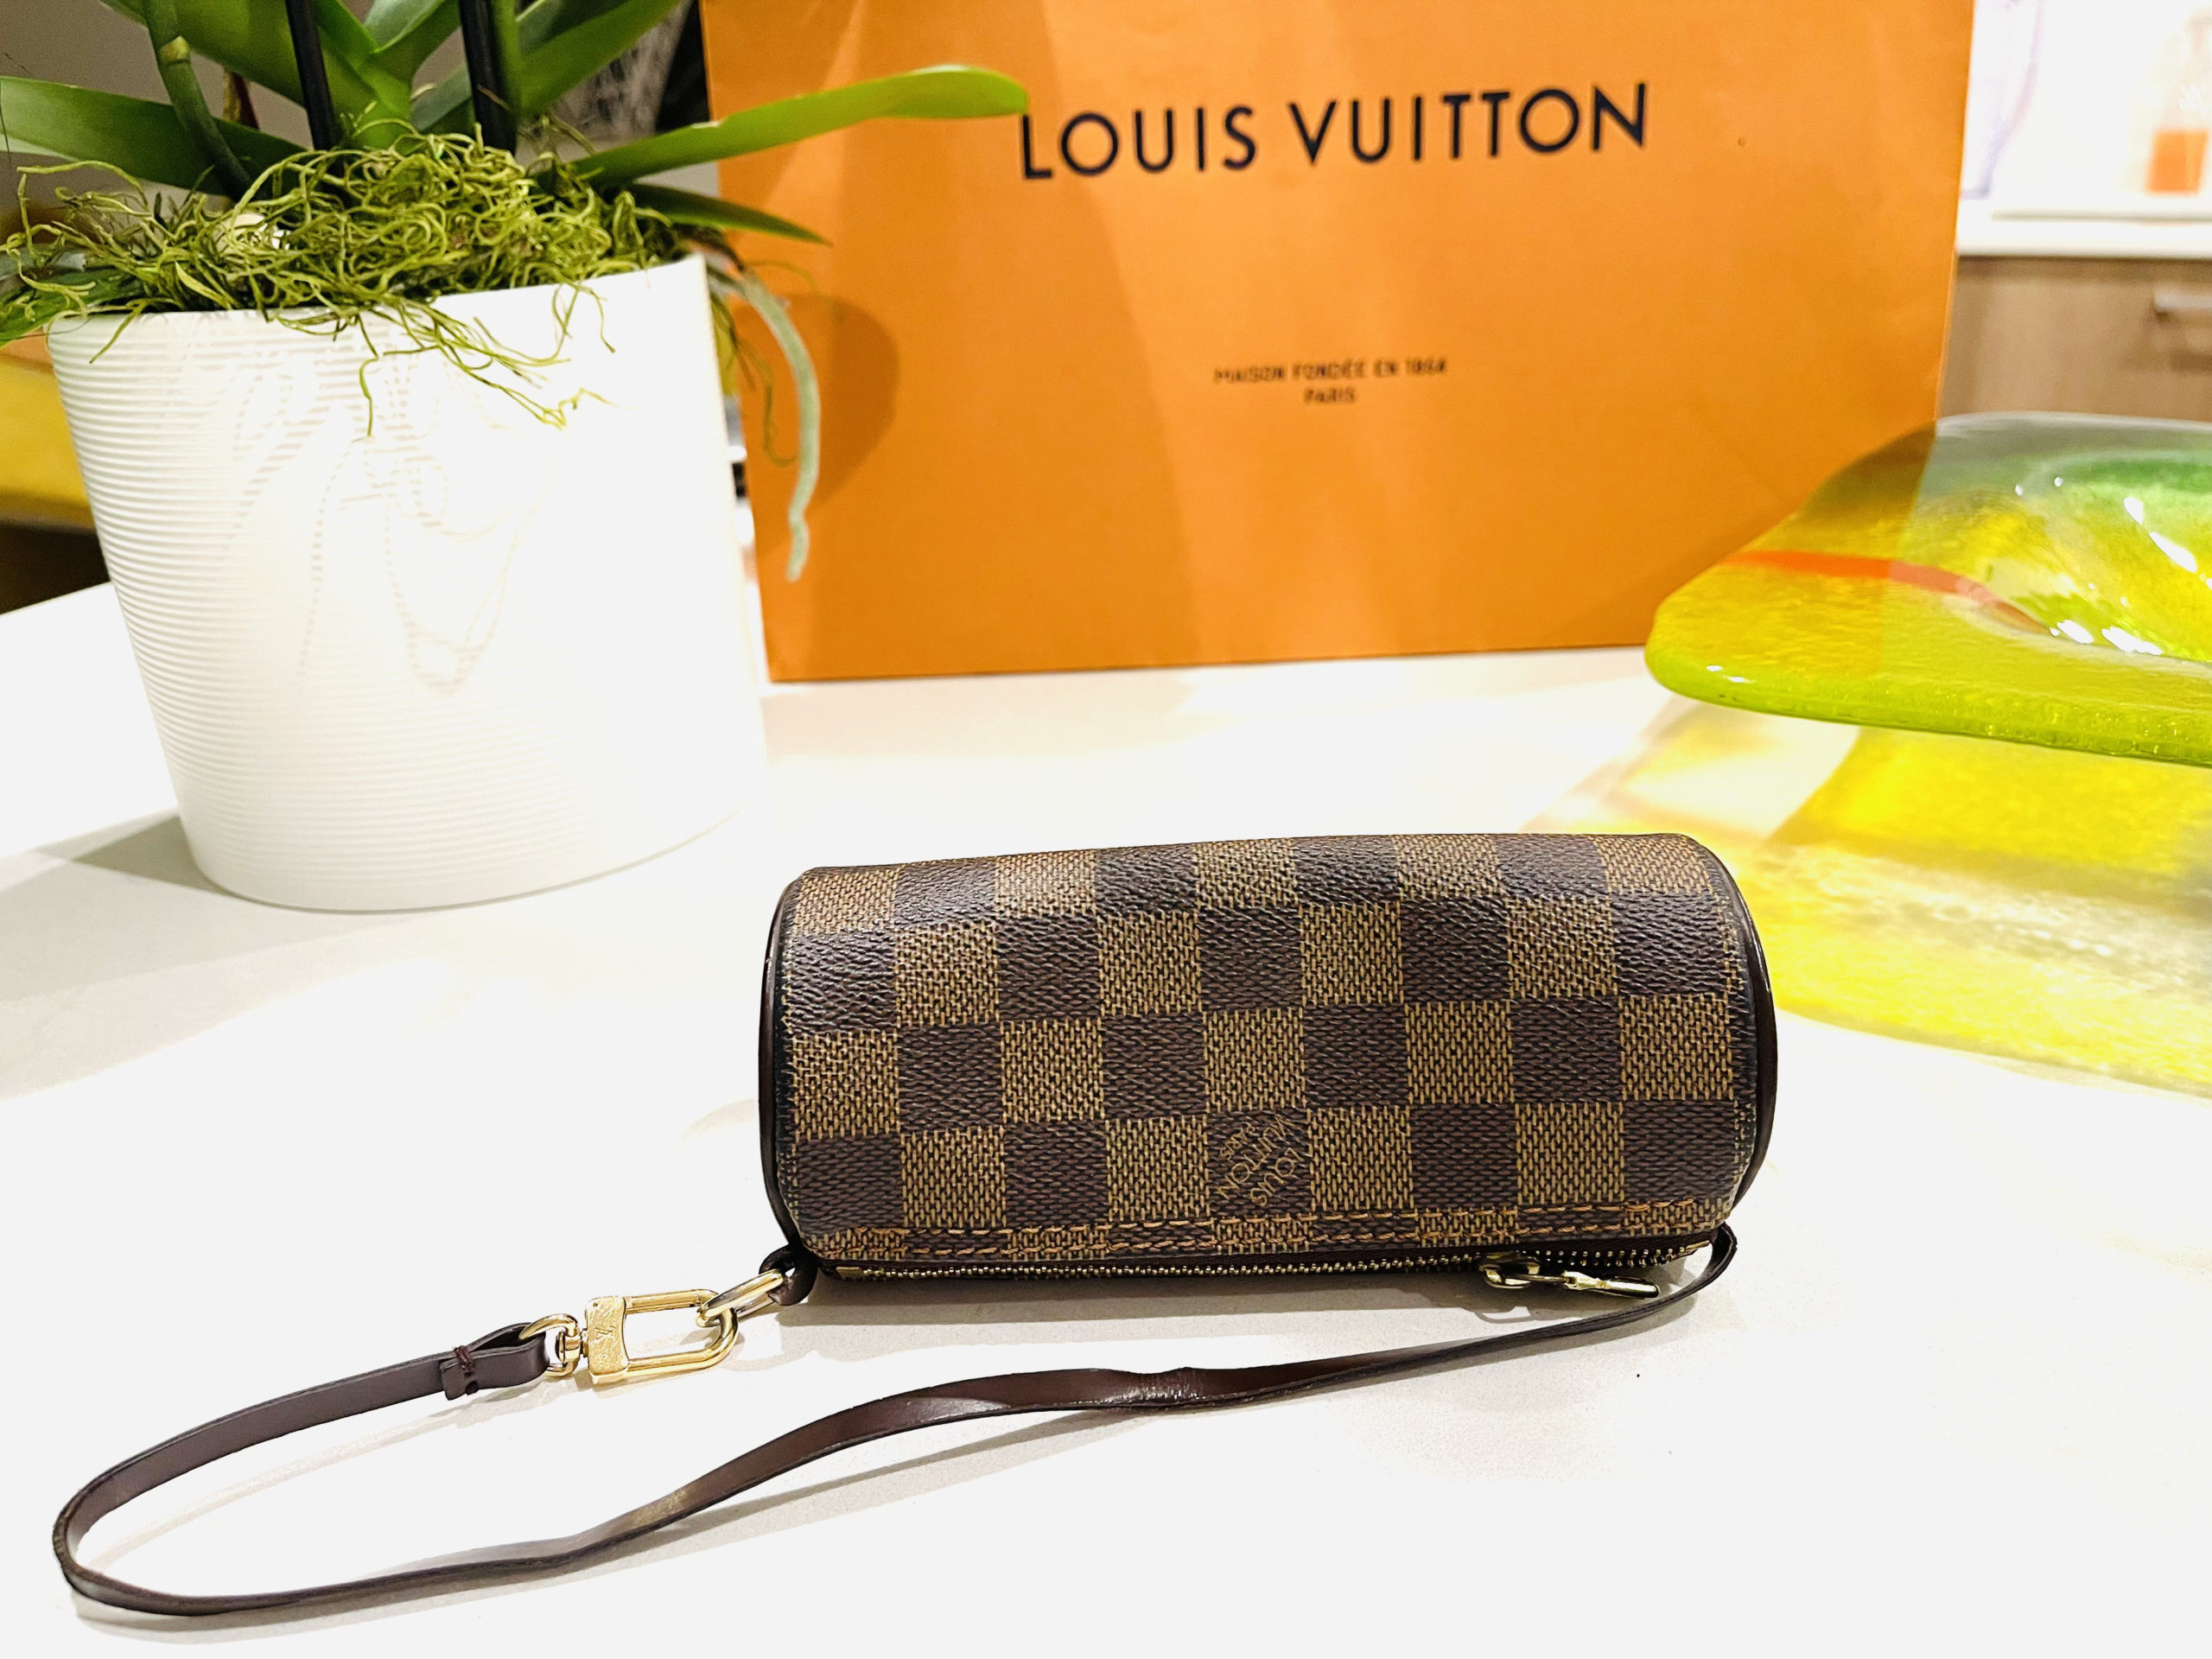 Authentic Louis Vuitton Damier Ebene Leather Pouch Mini Purse